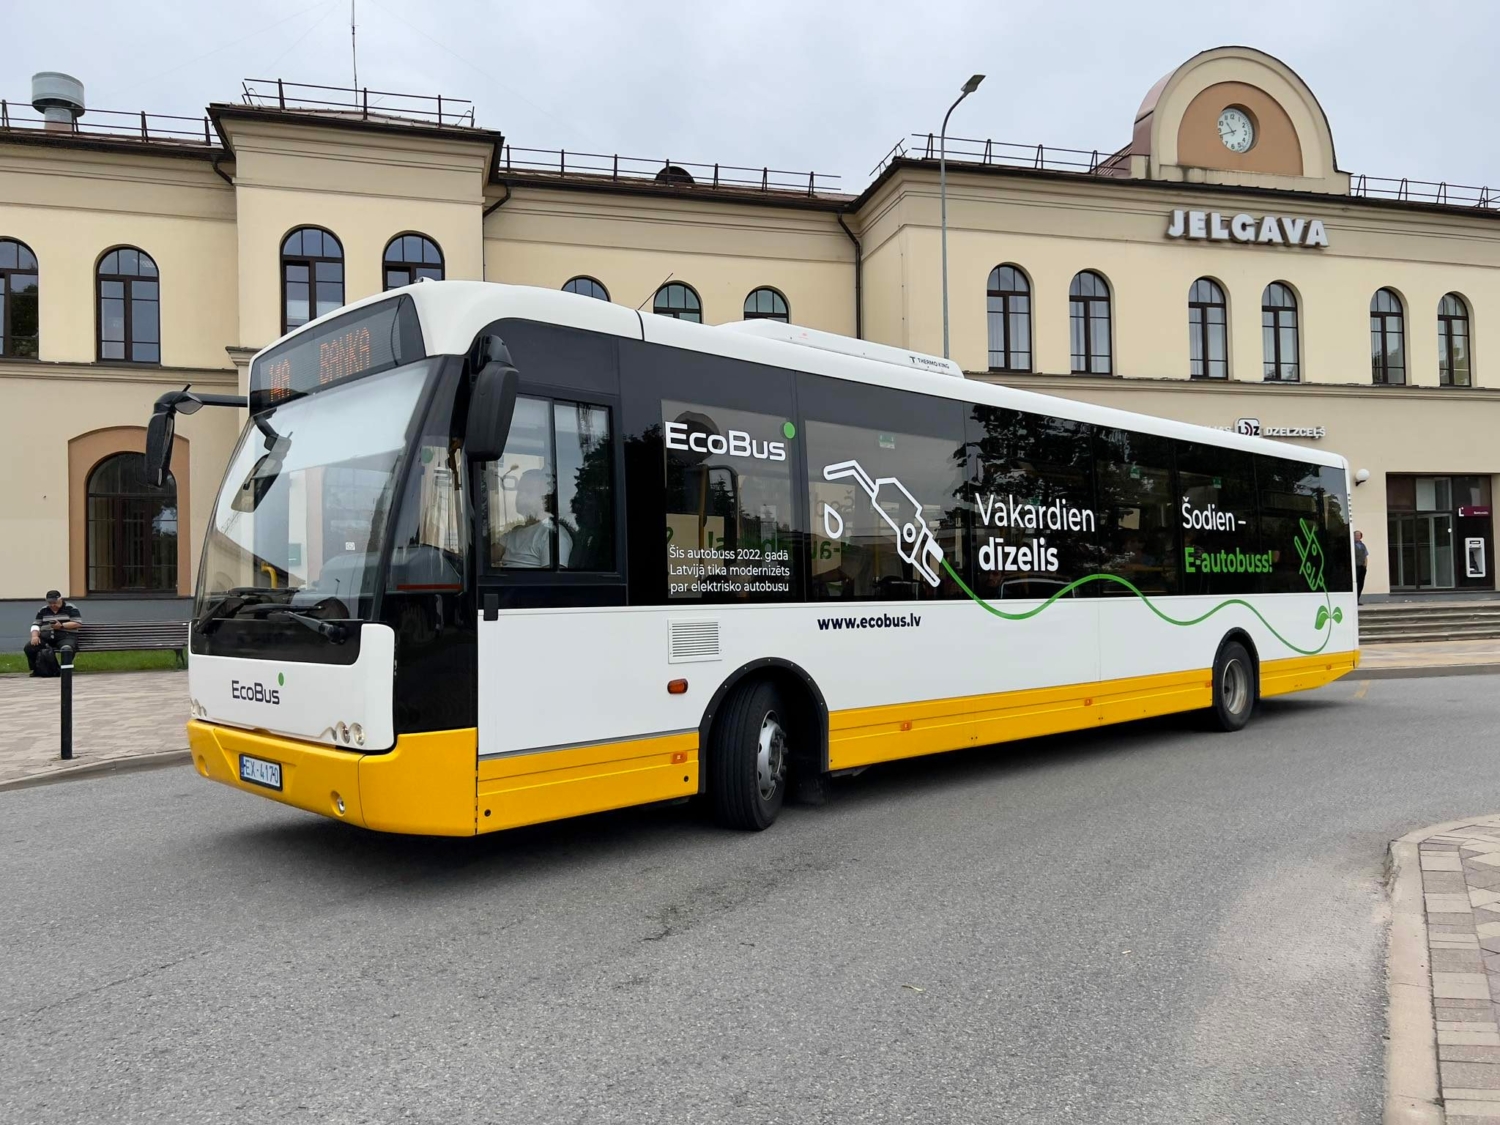 Na elektrobus přestavěný VDL Ambassador 200 u jelgavské vlakové stanice. (zdroj: město Jelgavā)